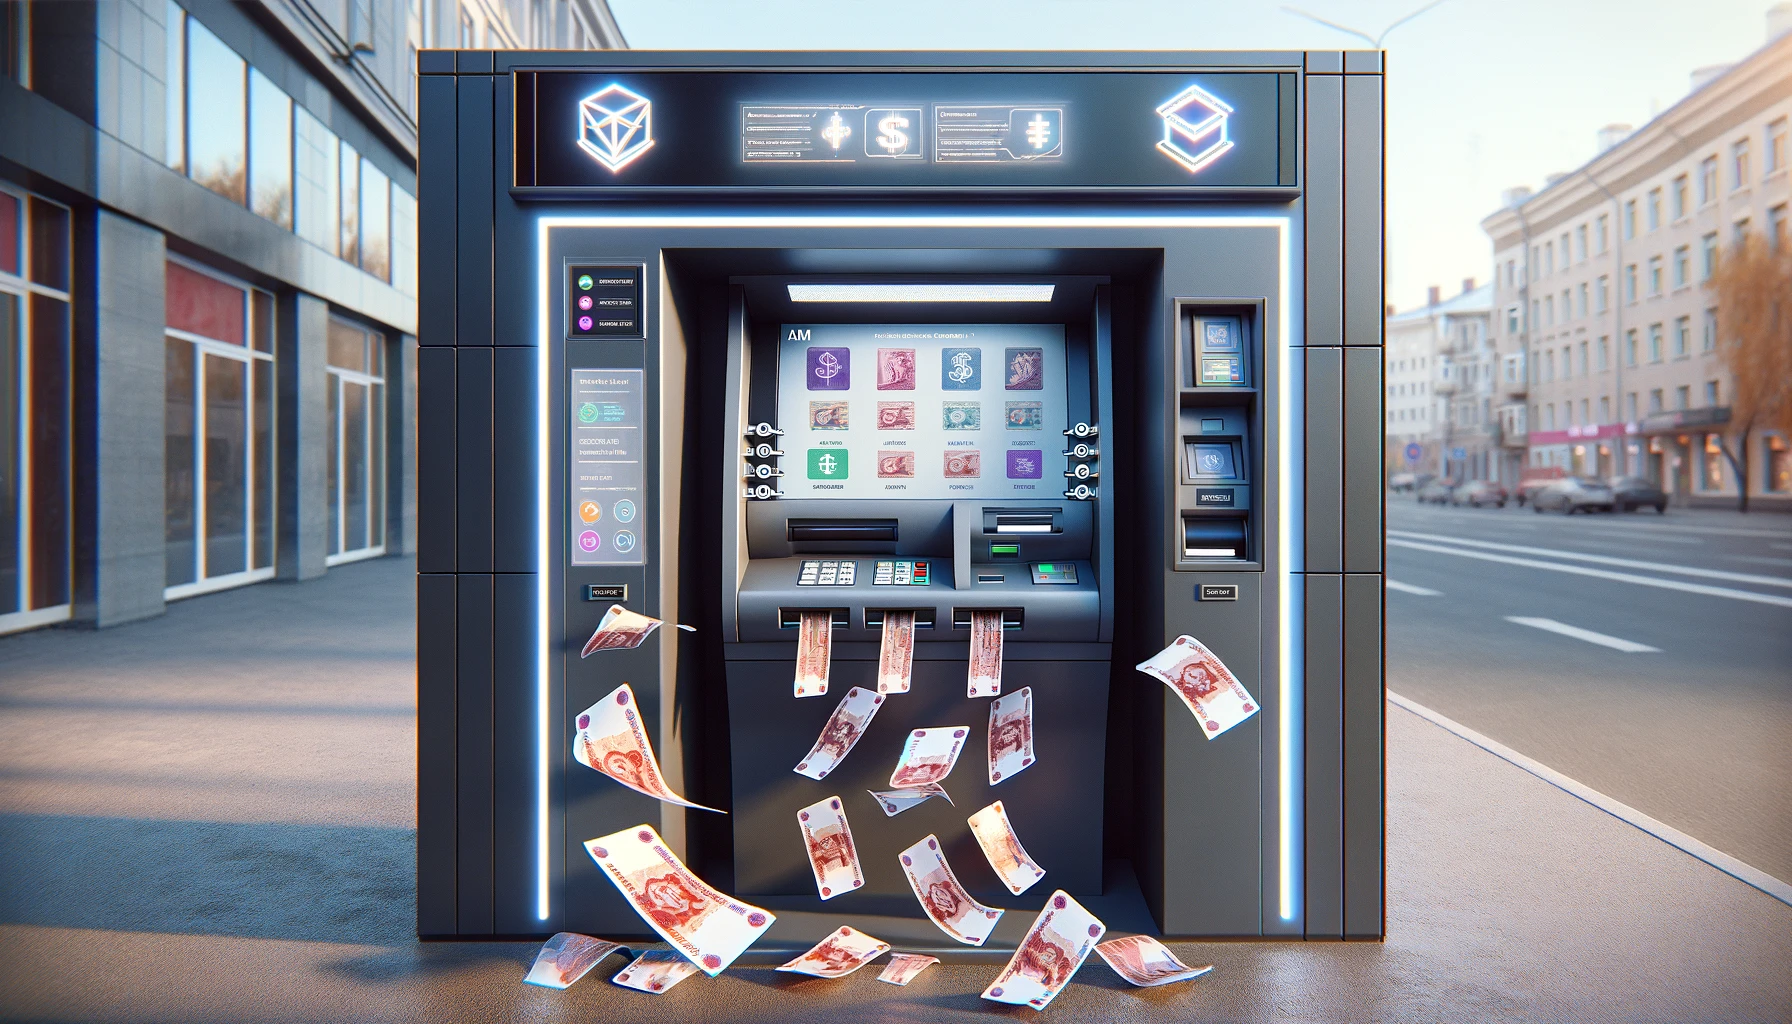 Цифровые рубли можно будет снять в банкомате, как обычные деньги